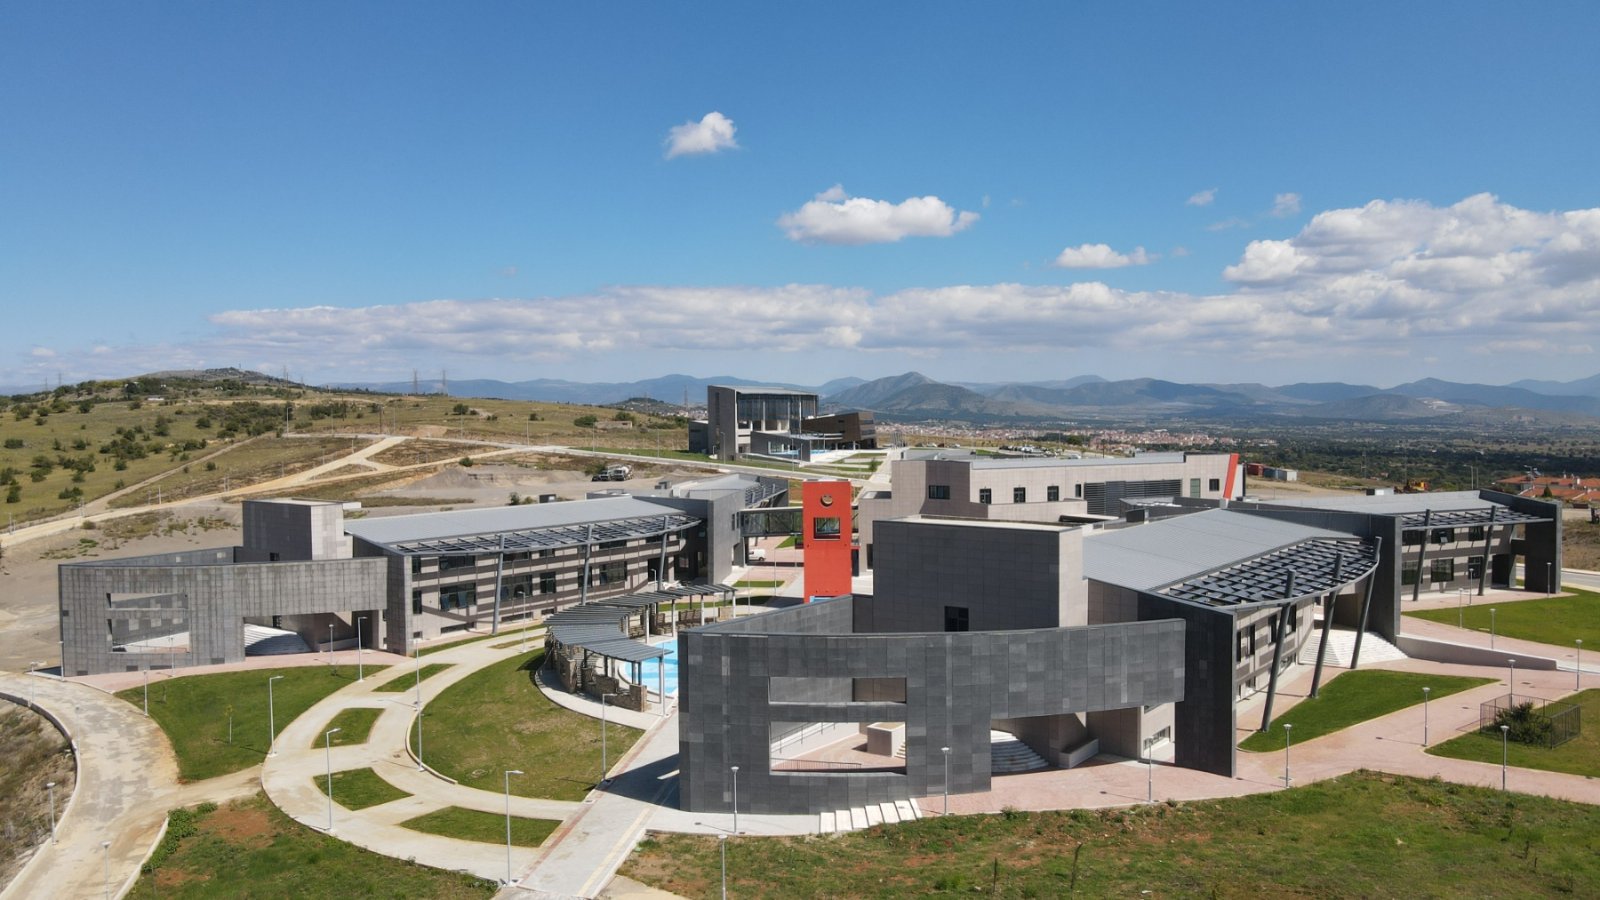 Πανεπιστήμιο Δυτικής Μακεδονίας: Ενδιαφέρον 5 επενδυτικών σχημάτων για το μεγαλόπνοο έργο των νέων φοιτητικών εστιών και του  πολυδύναμου συνεδριακού κέντρου μέσω ΣΔΙΤ